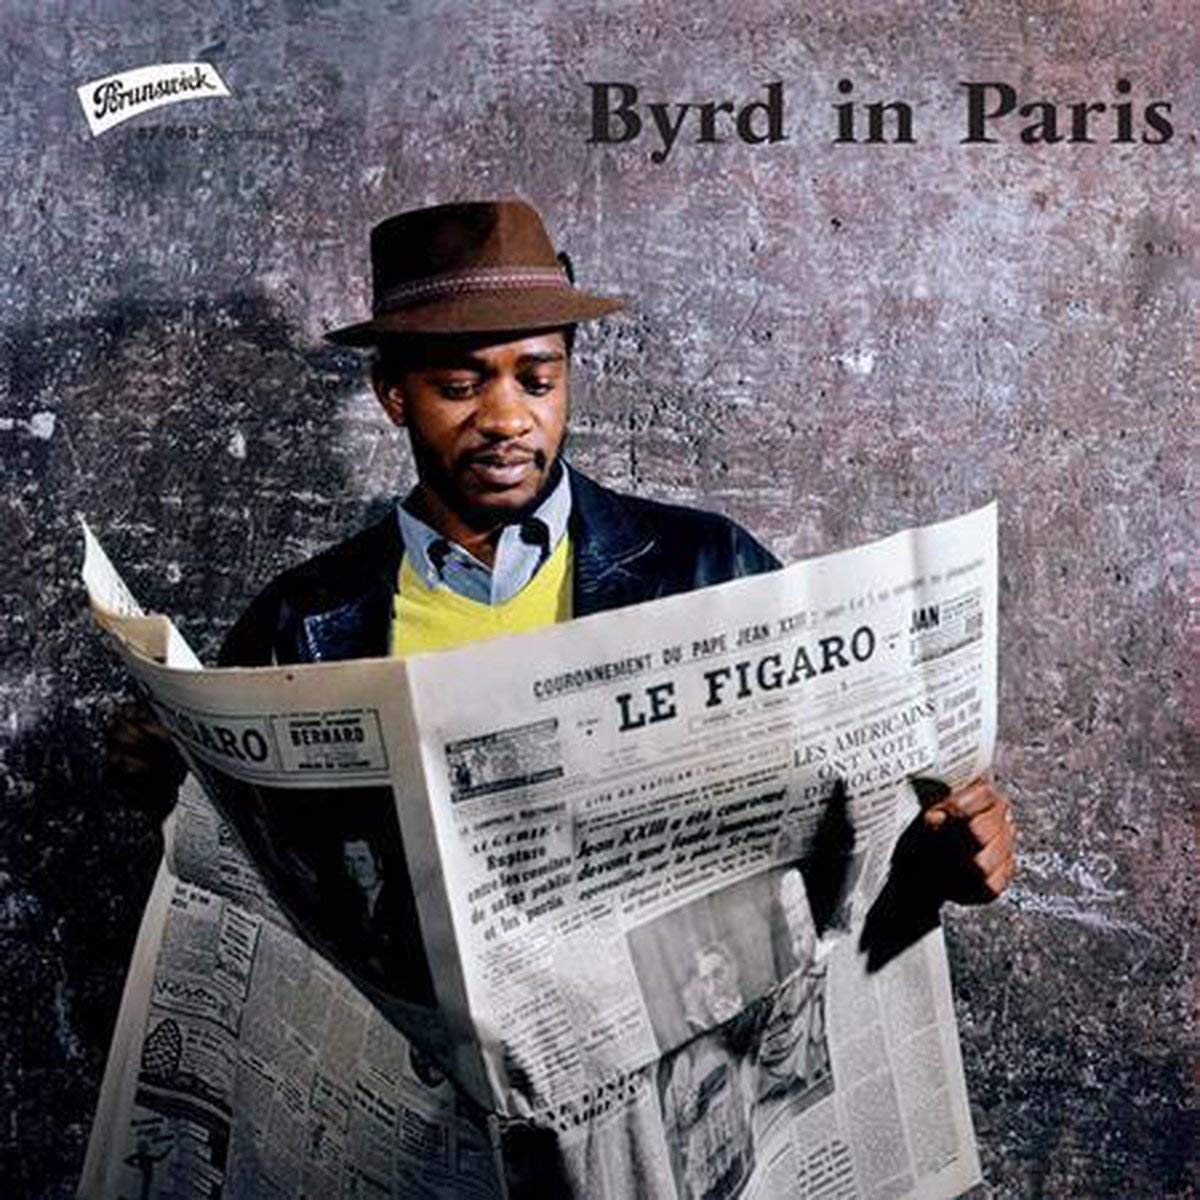 [DAMAGED] Donald Byrd - Byrd In Paris [LIMIT 1 PER CUSTOMER]